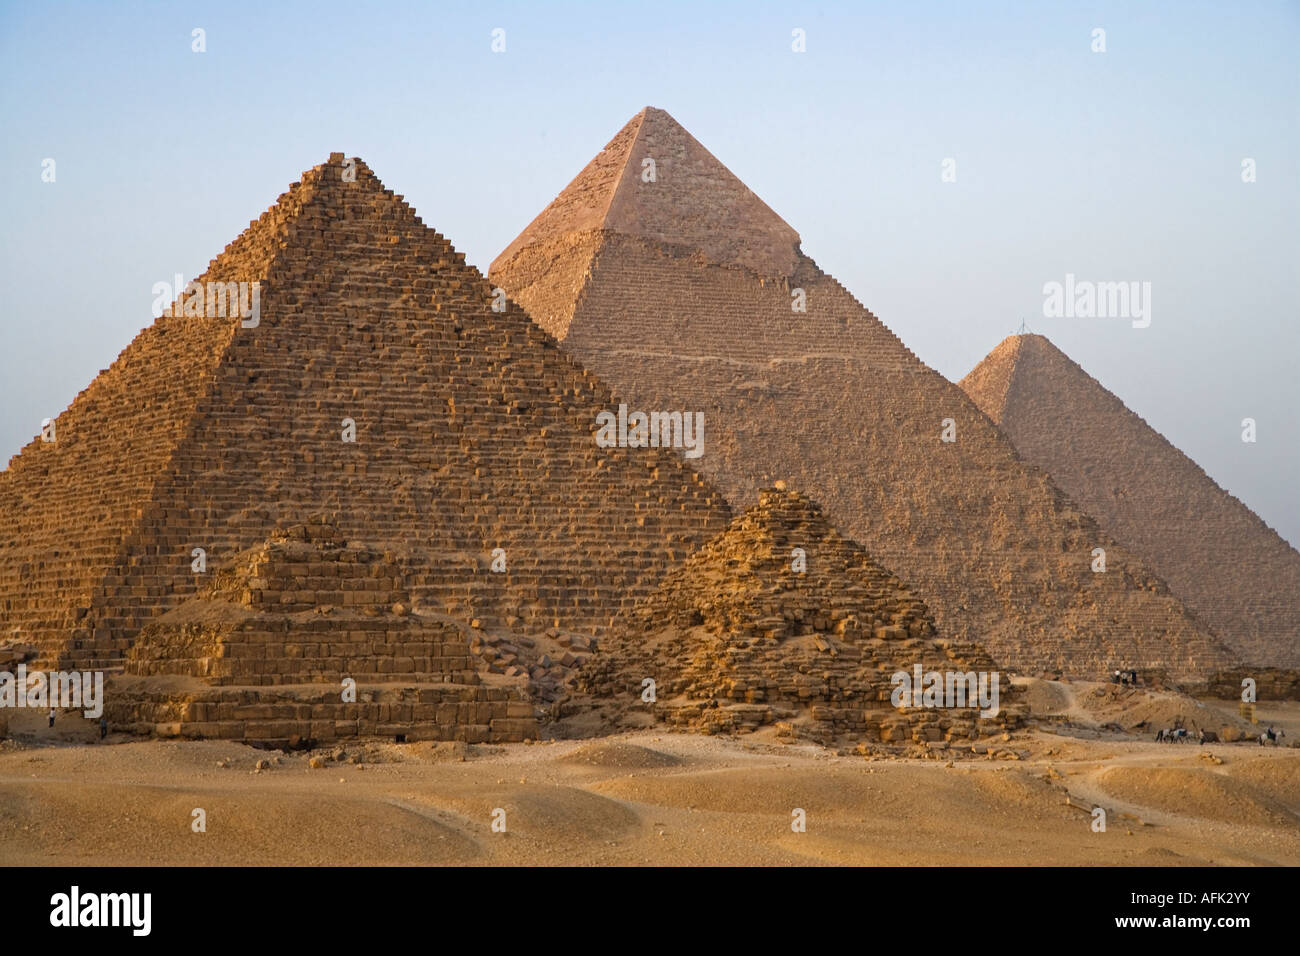 Hazañas de la humanidad: Las pirámides de Egipto